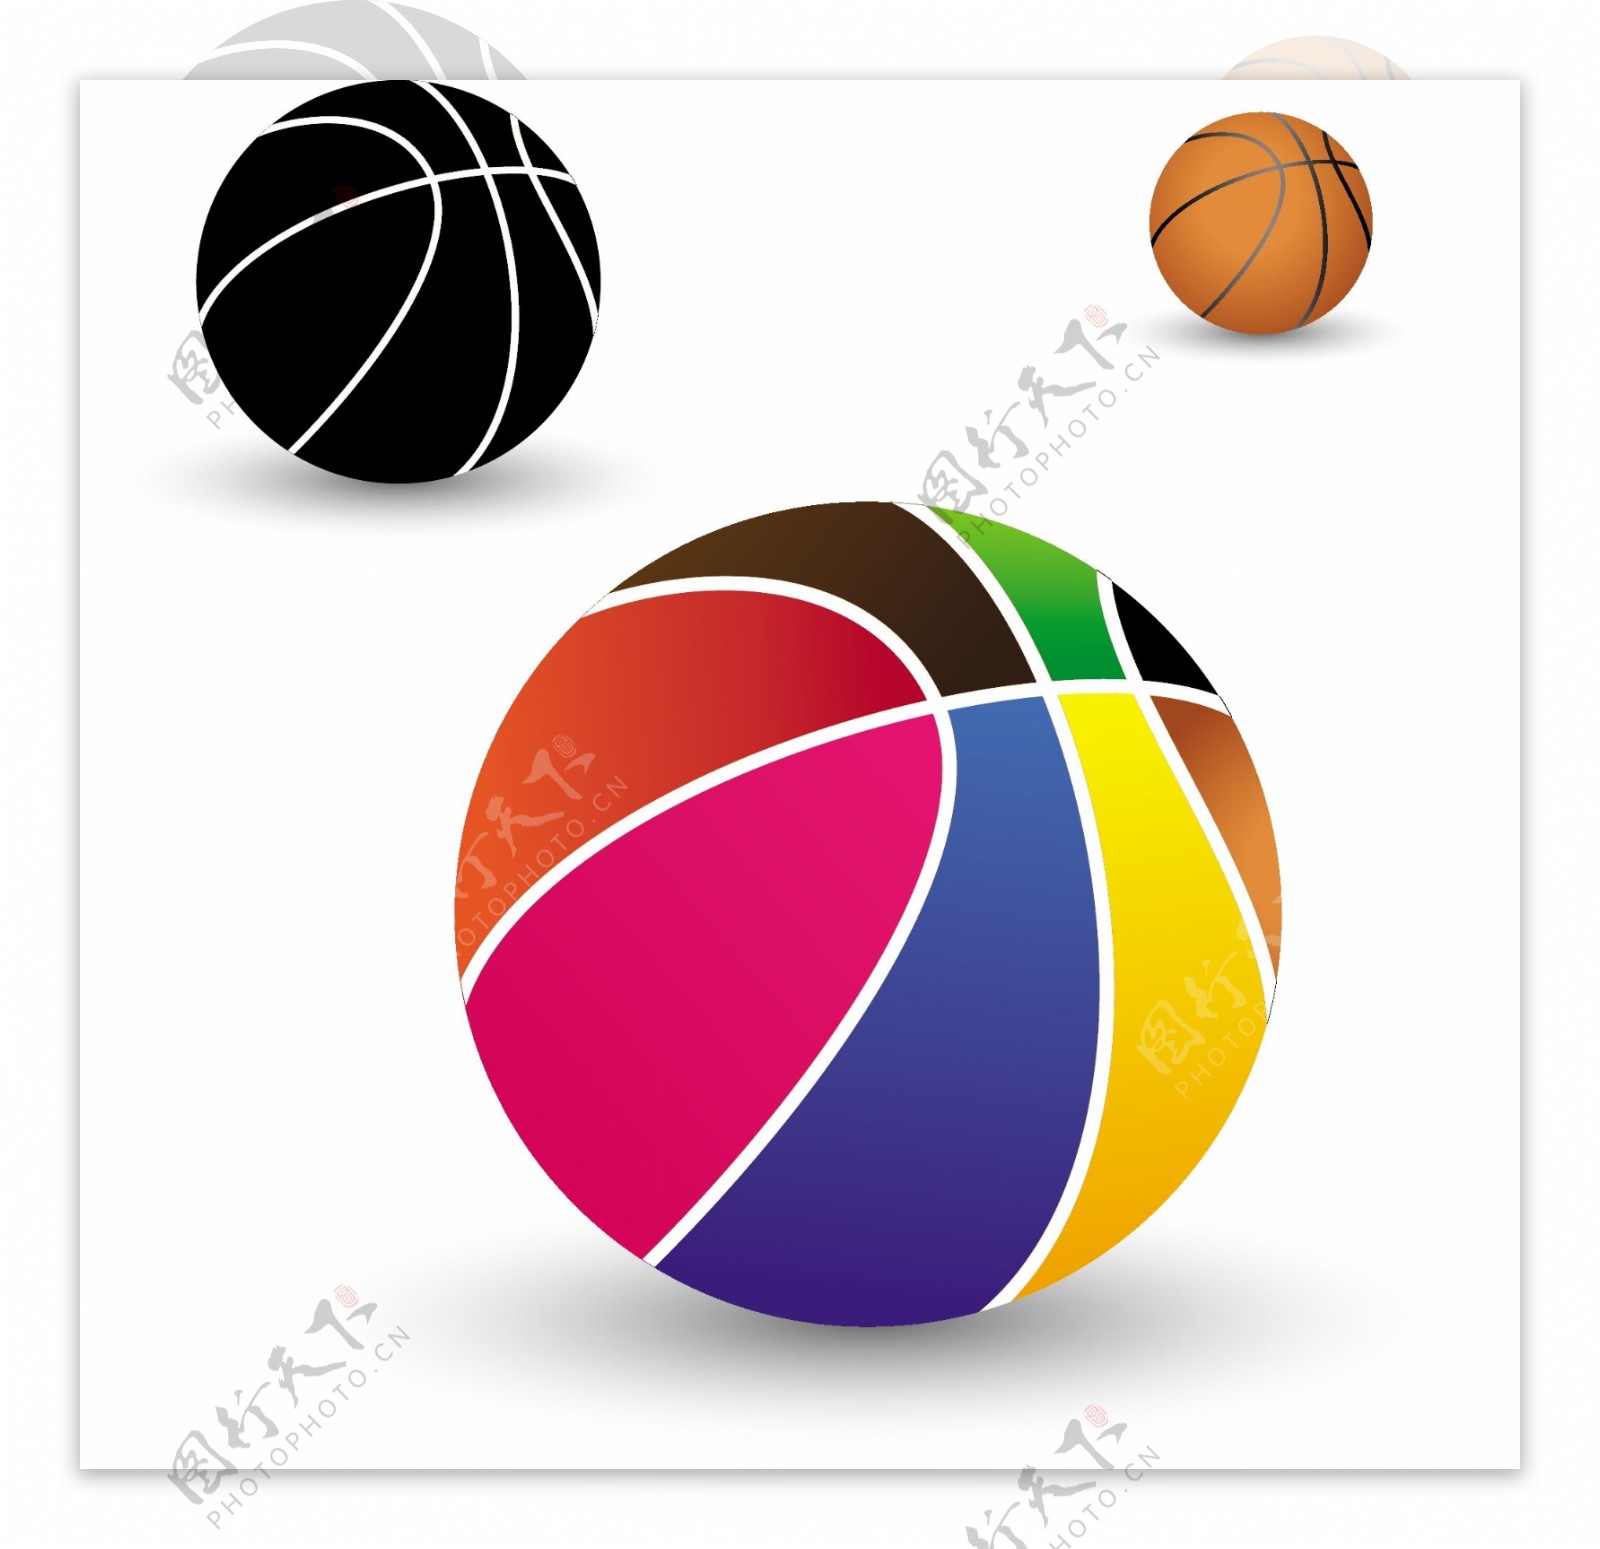 不同颜色的篮球球